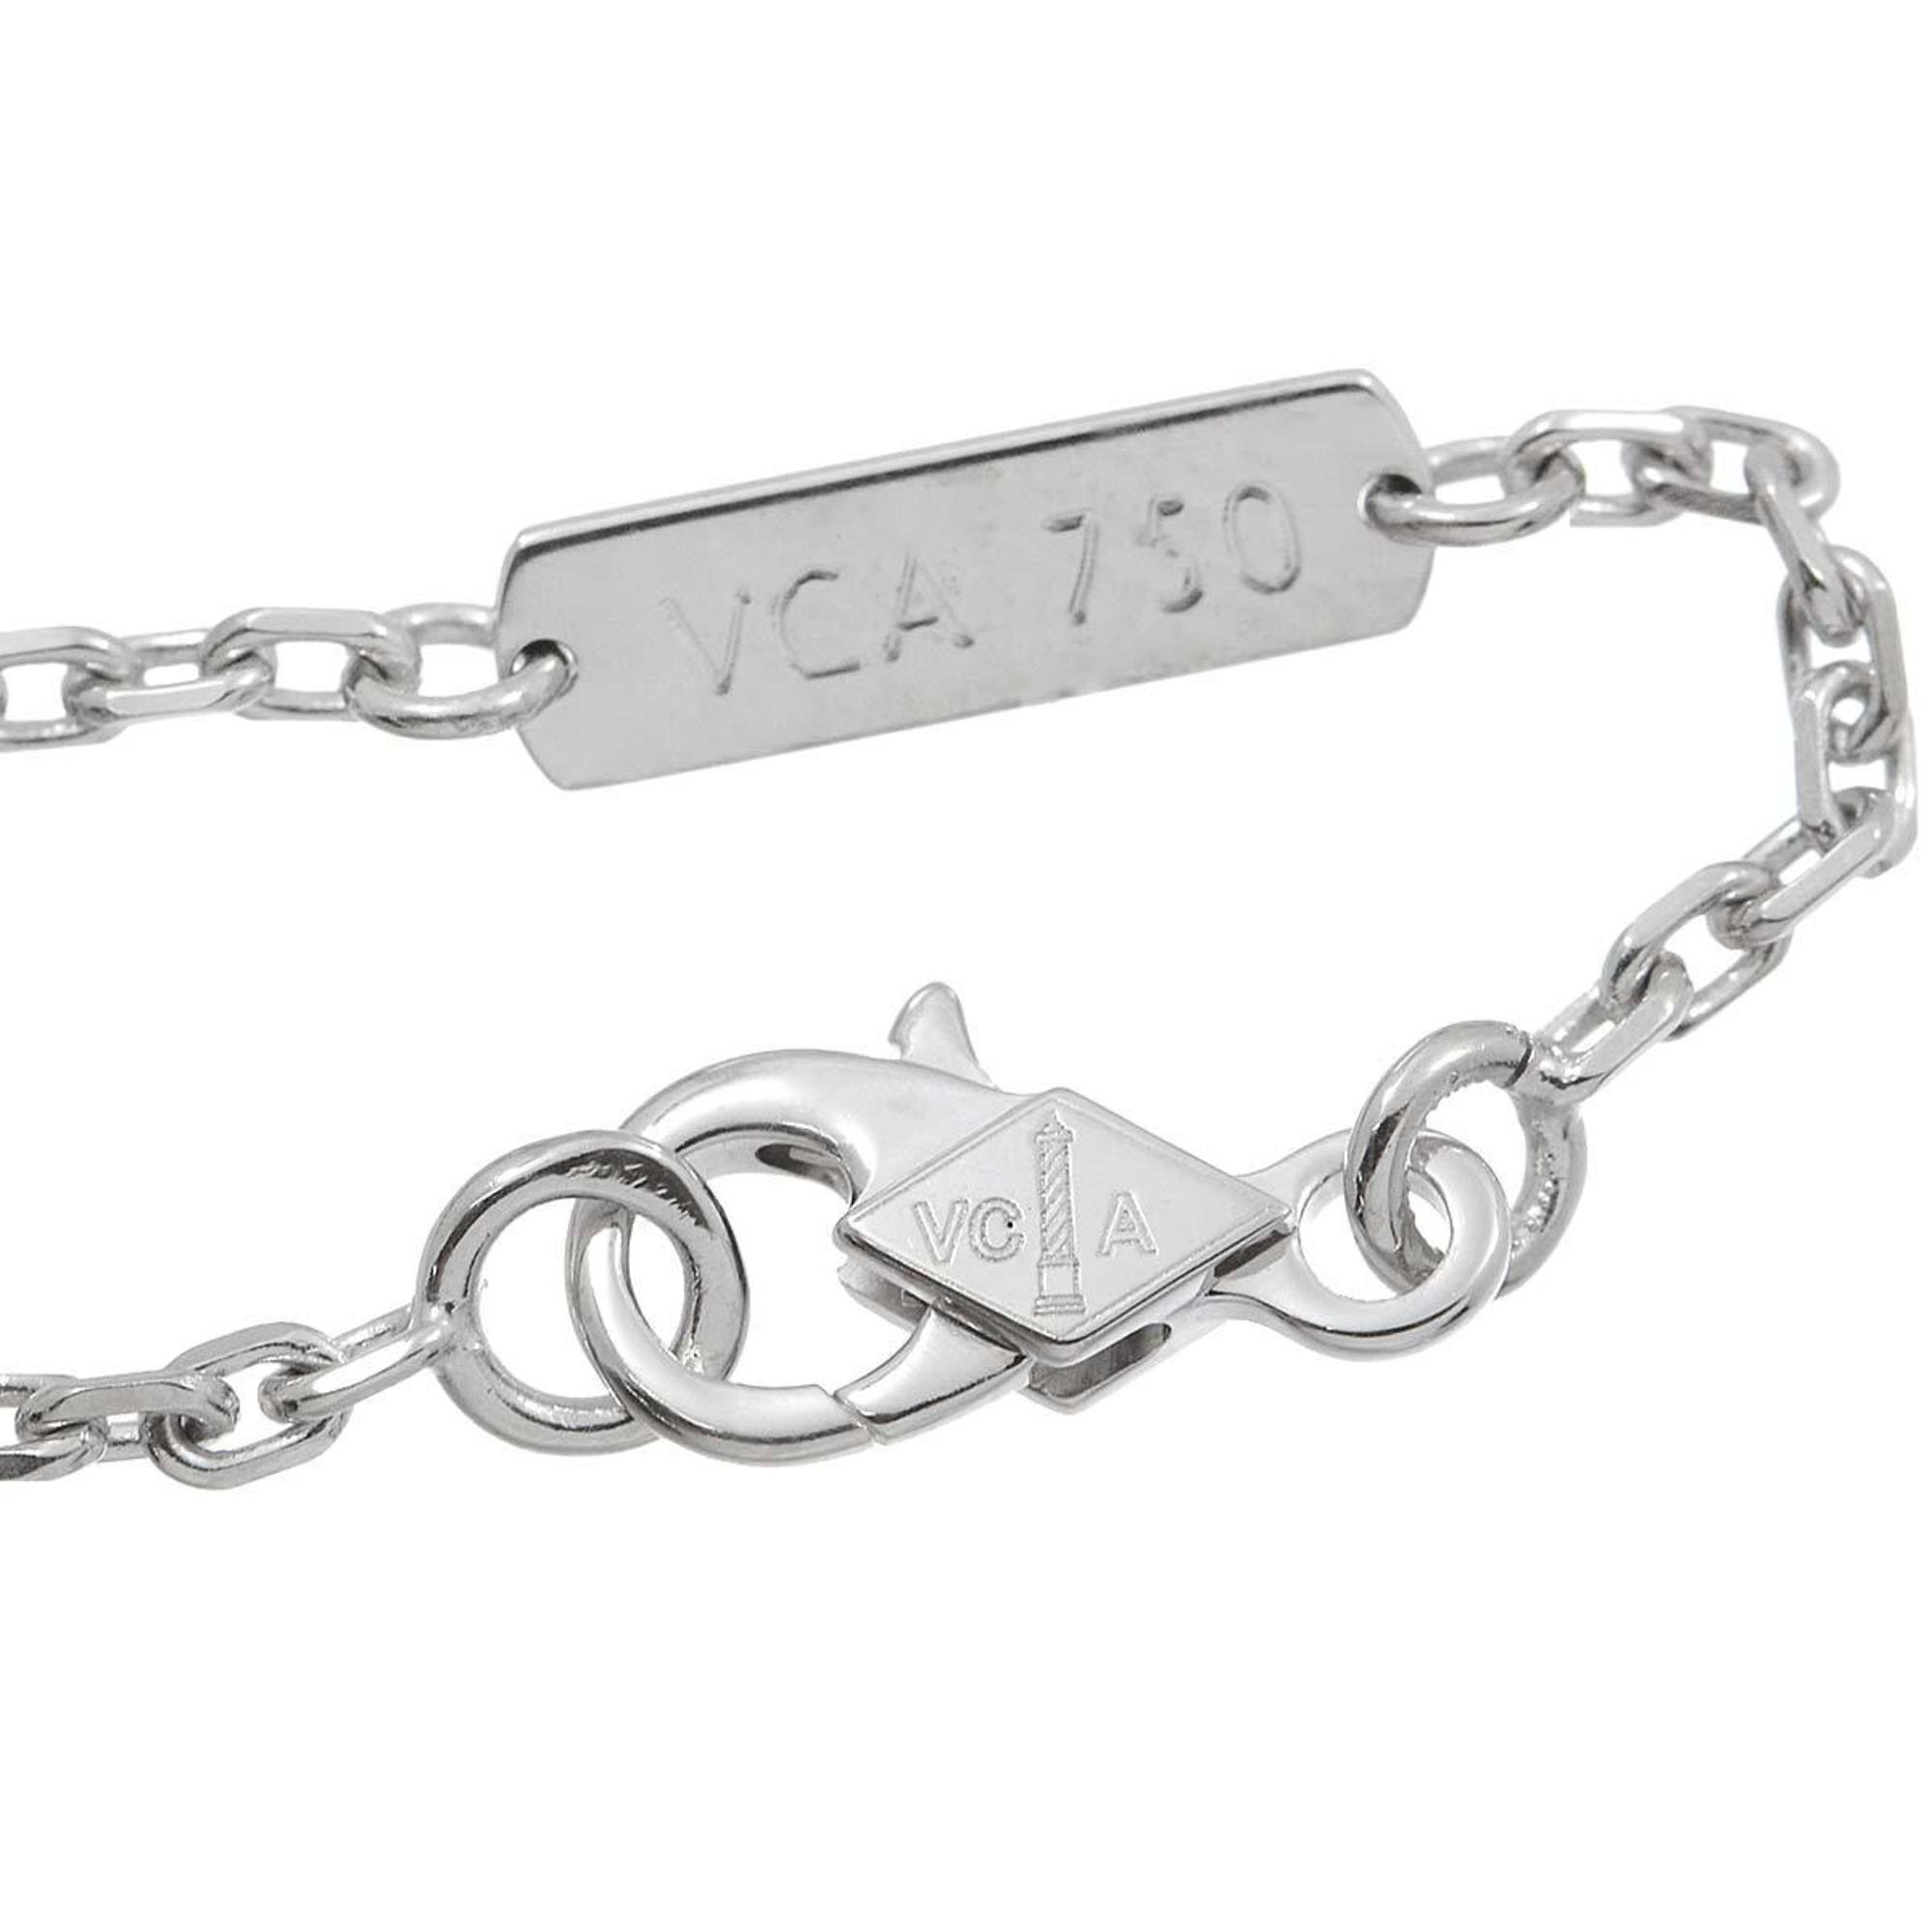 Van Cleef & Arpels FRIVOLE Heart Necklace 42cm K18 WG White Gold 750